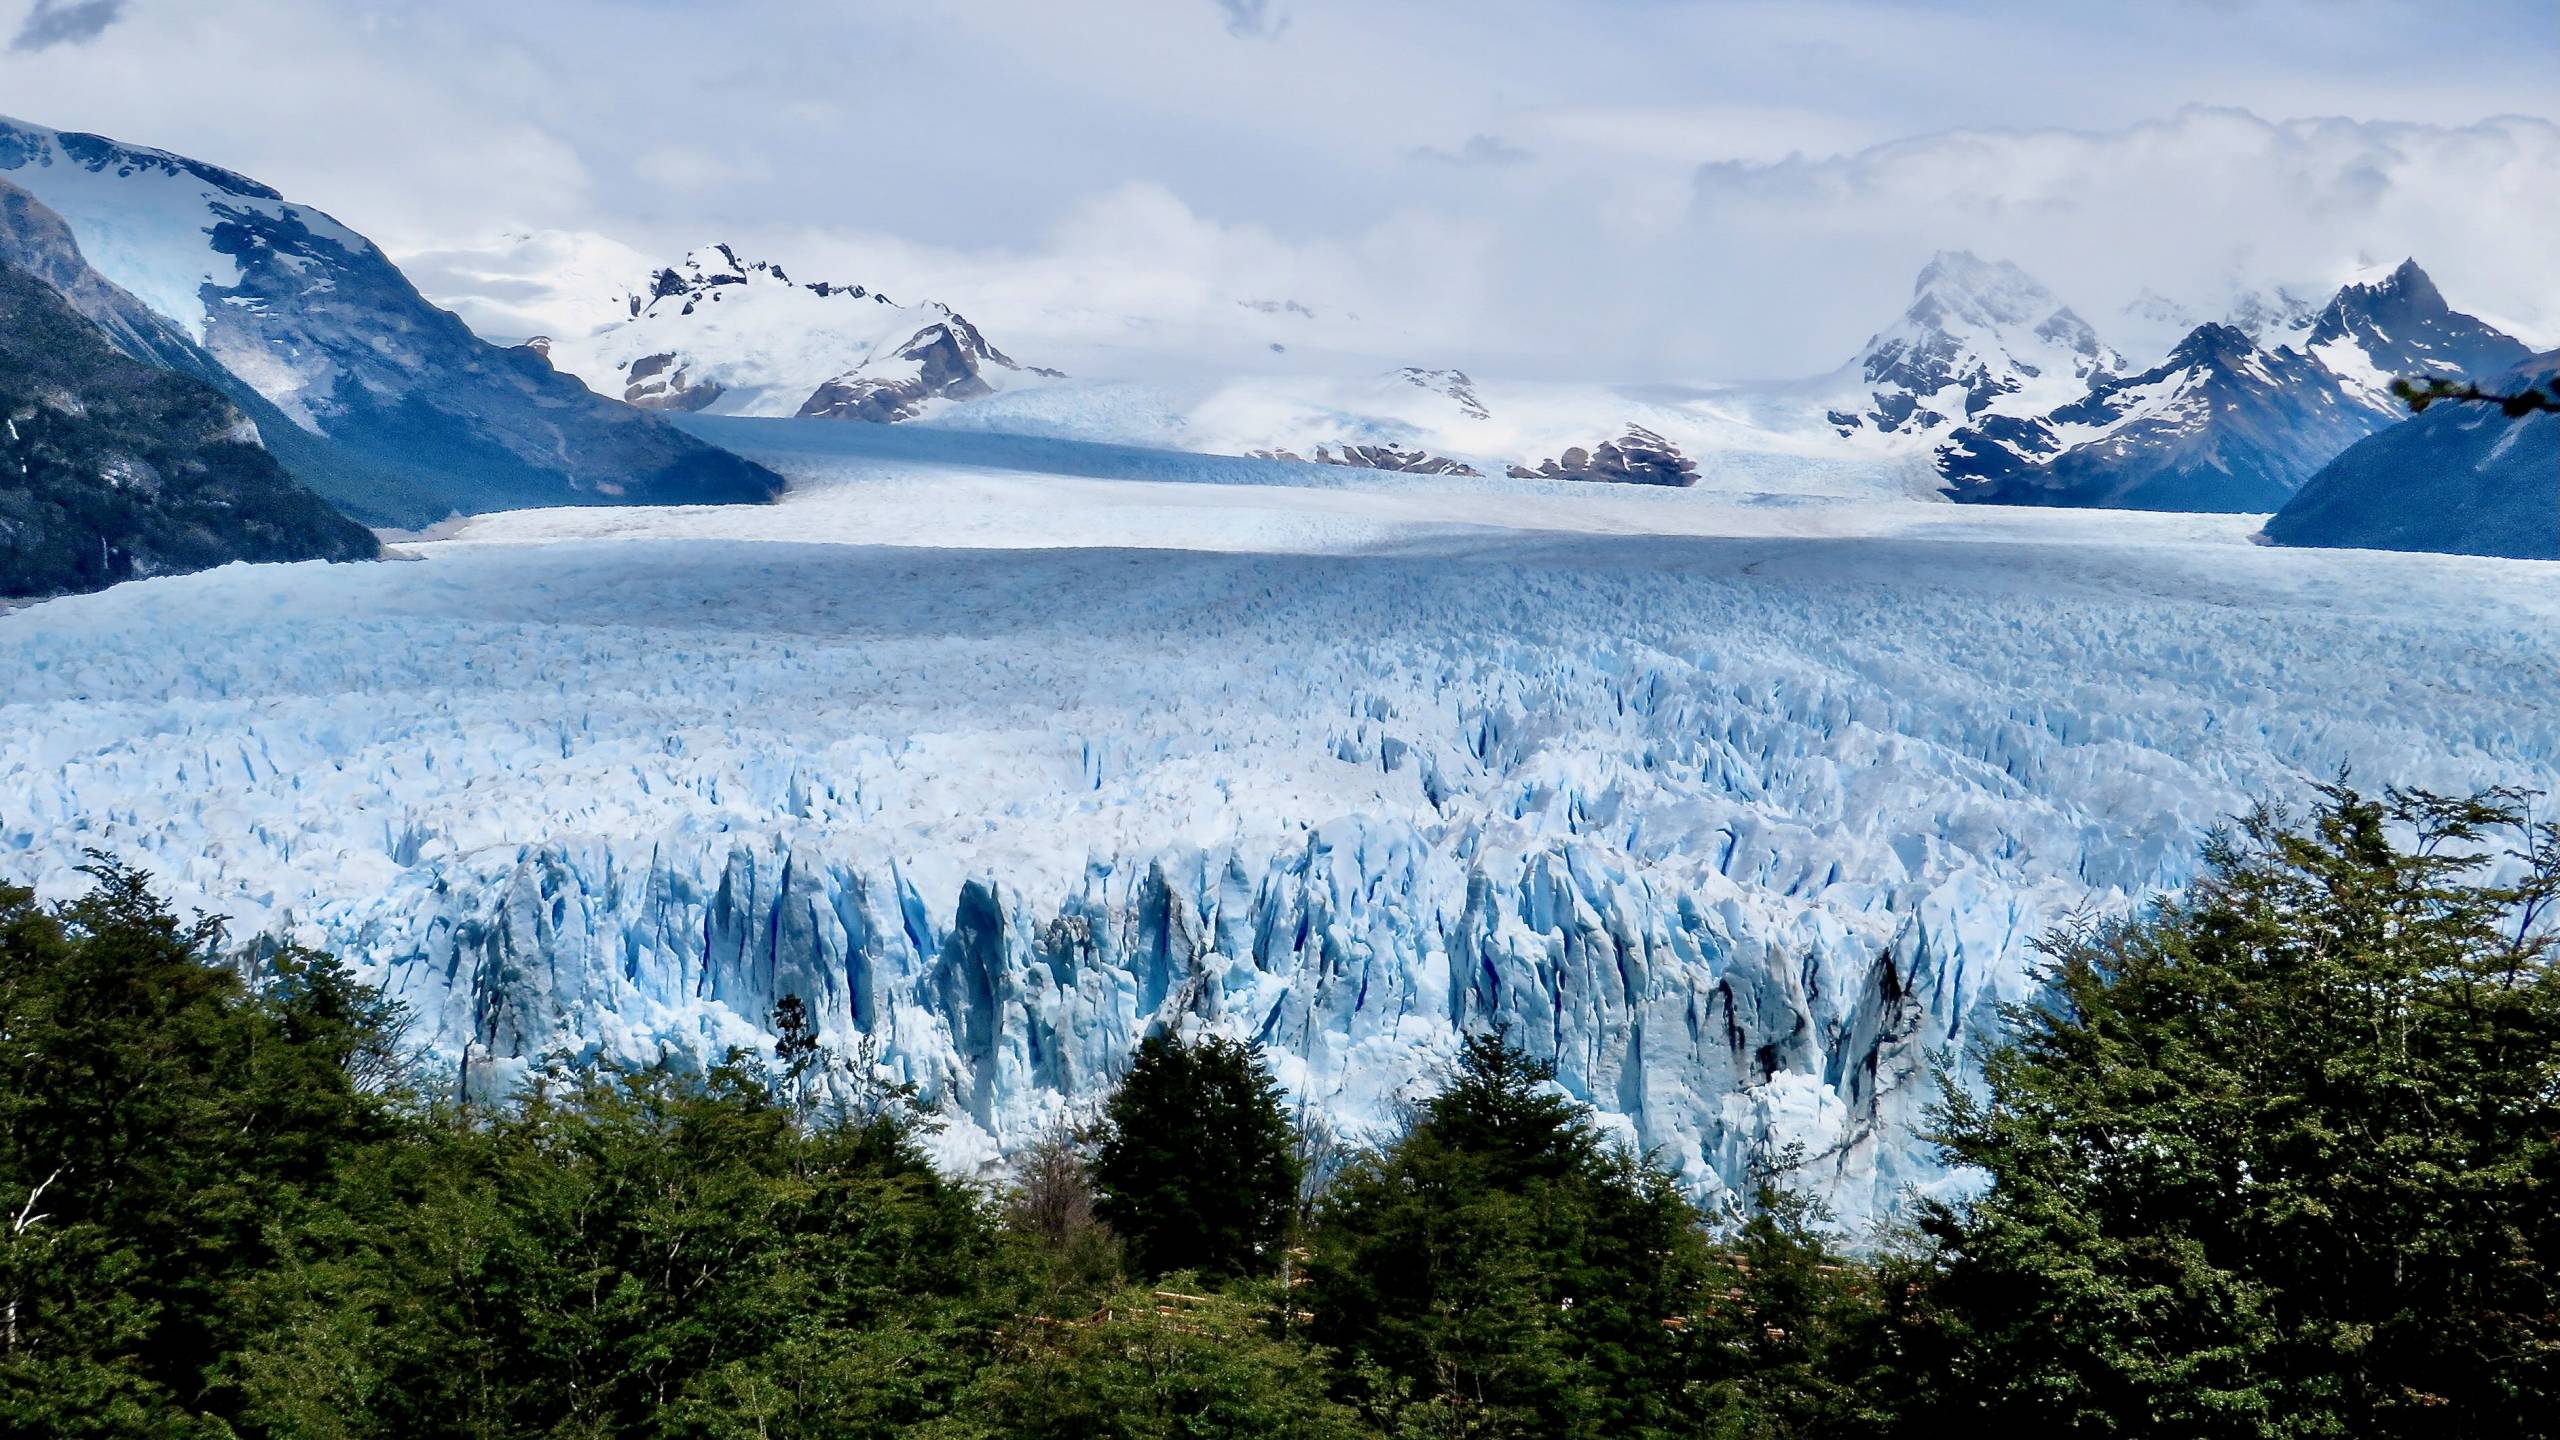 https://oranatravel.com/wp-content/uploads/2017/12/perito-moreno-glacier-argentina-scaled.jpg